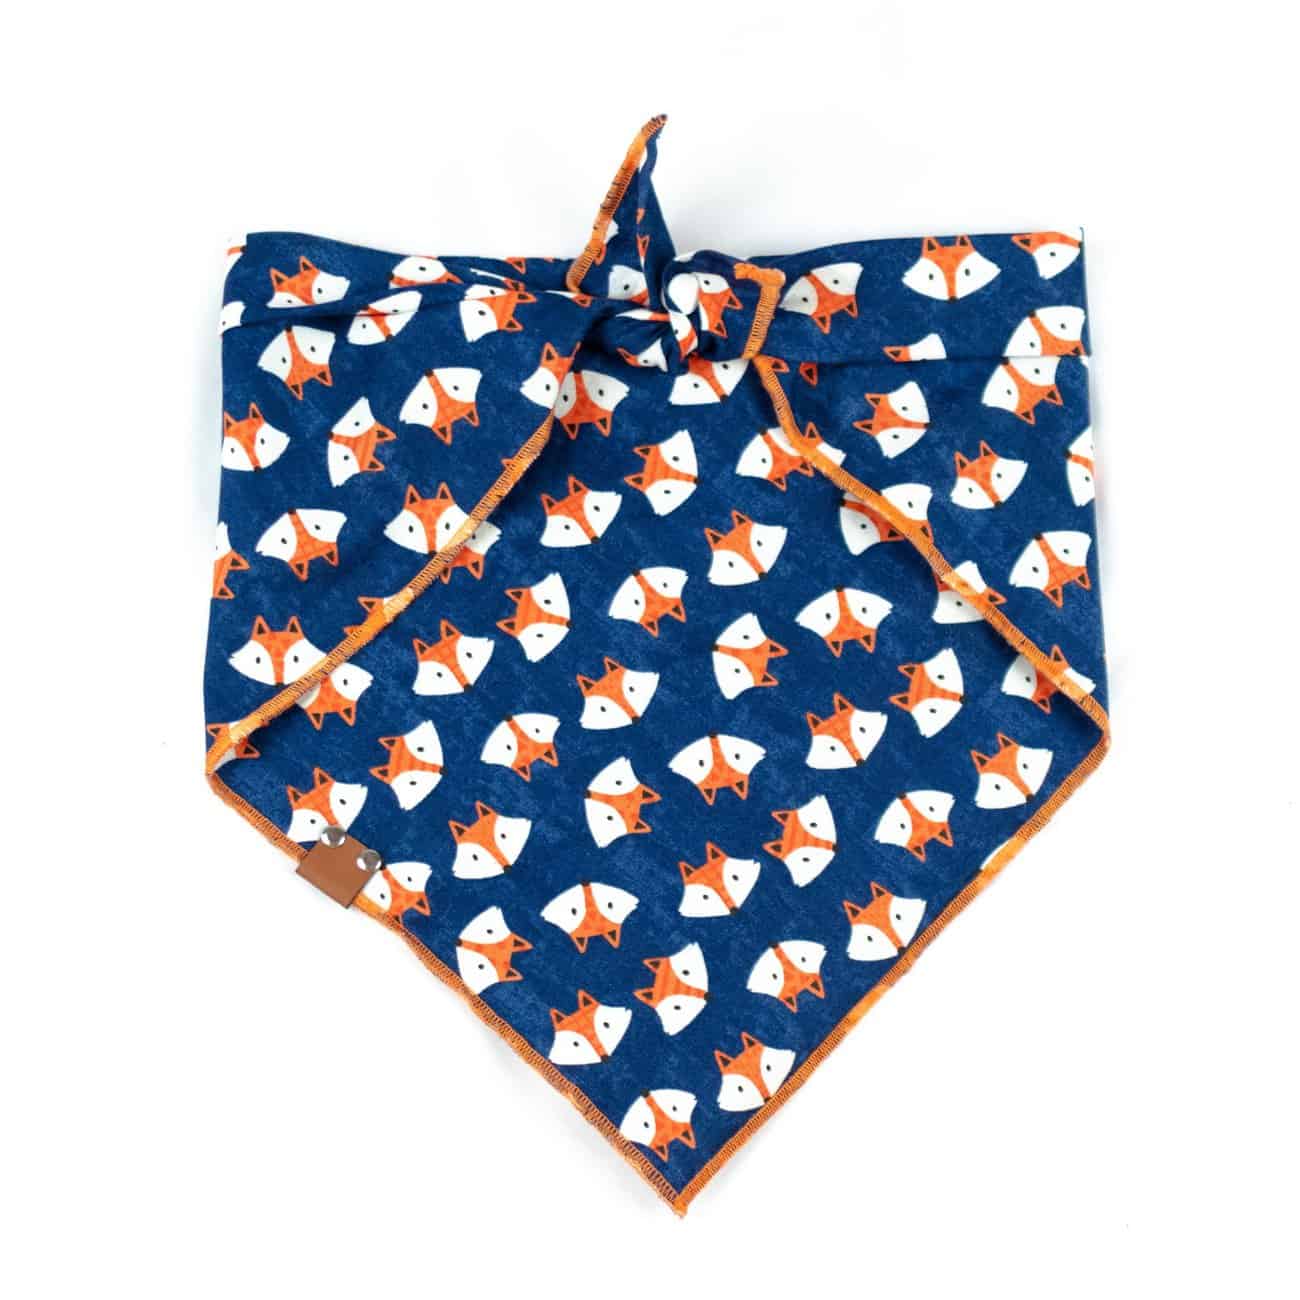 Navy blue dog bandana with orange and white fox print and orange hem